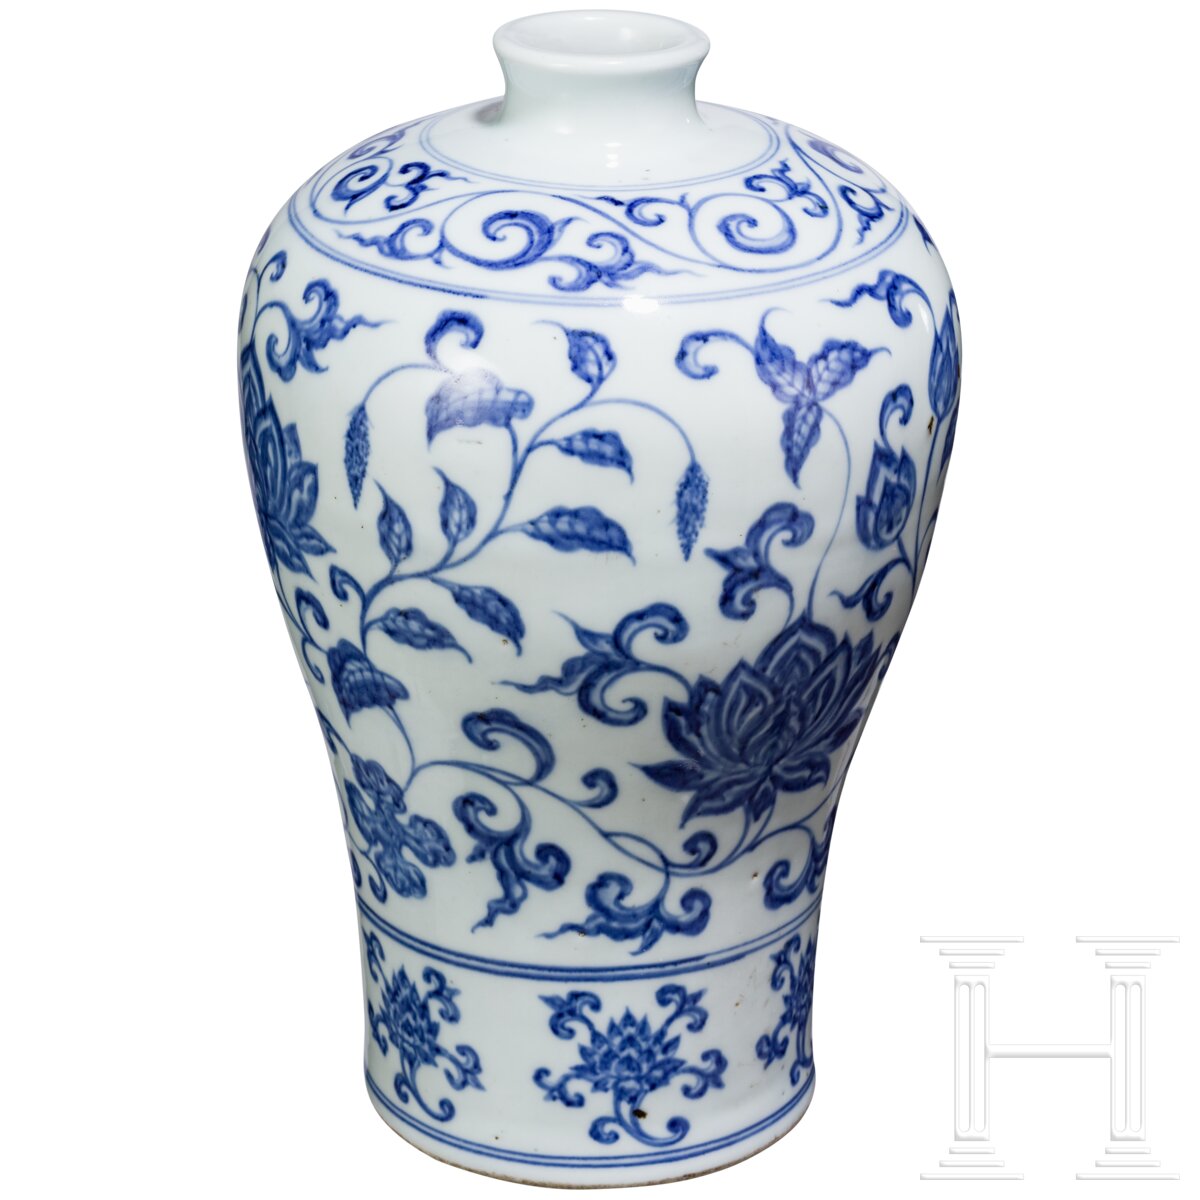 Blau-weiße Meiping-Vase im Ming-Stil, China, wahrscheinlich 19./20. Jhdt. - Image 3 of 16